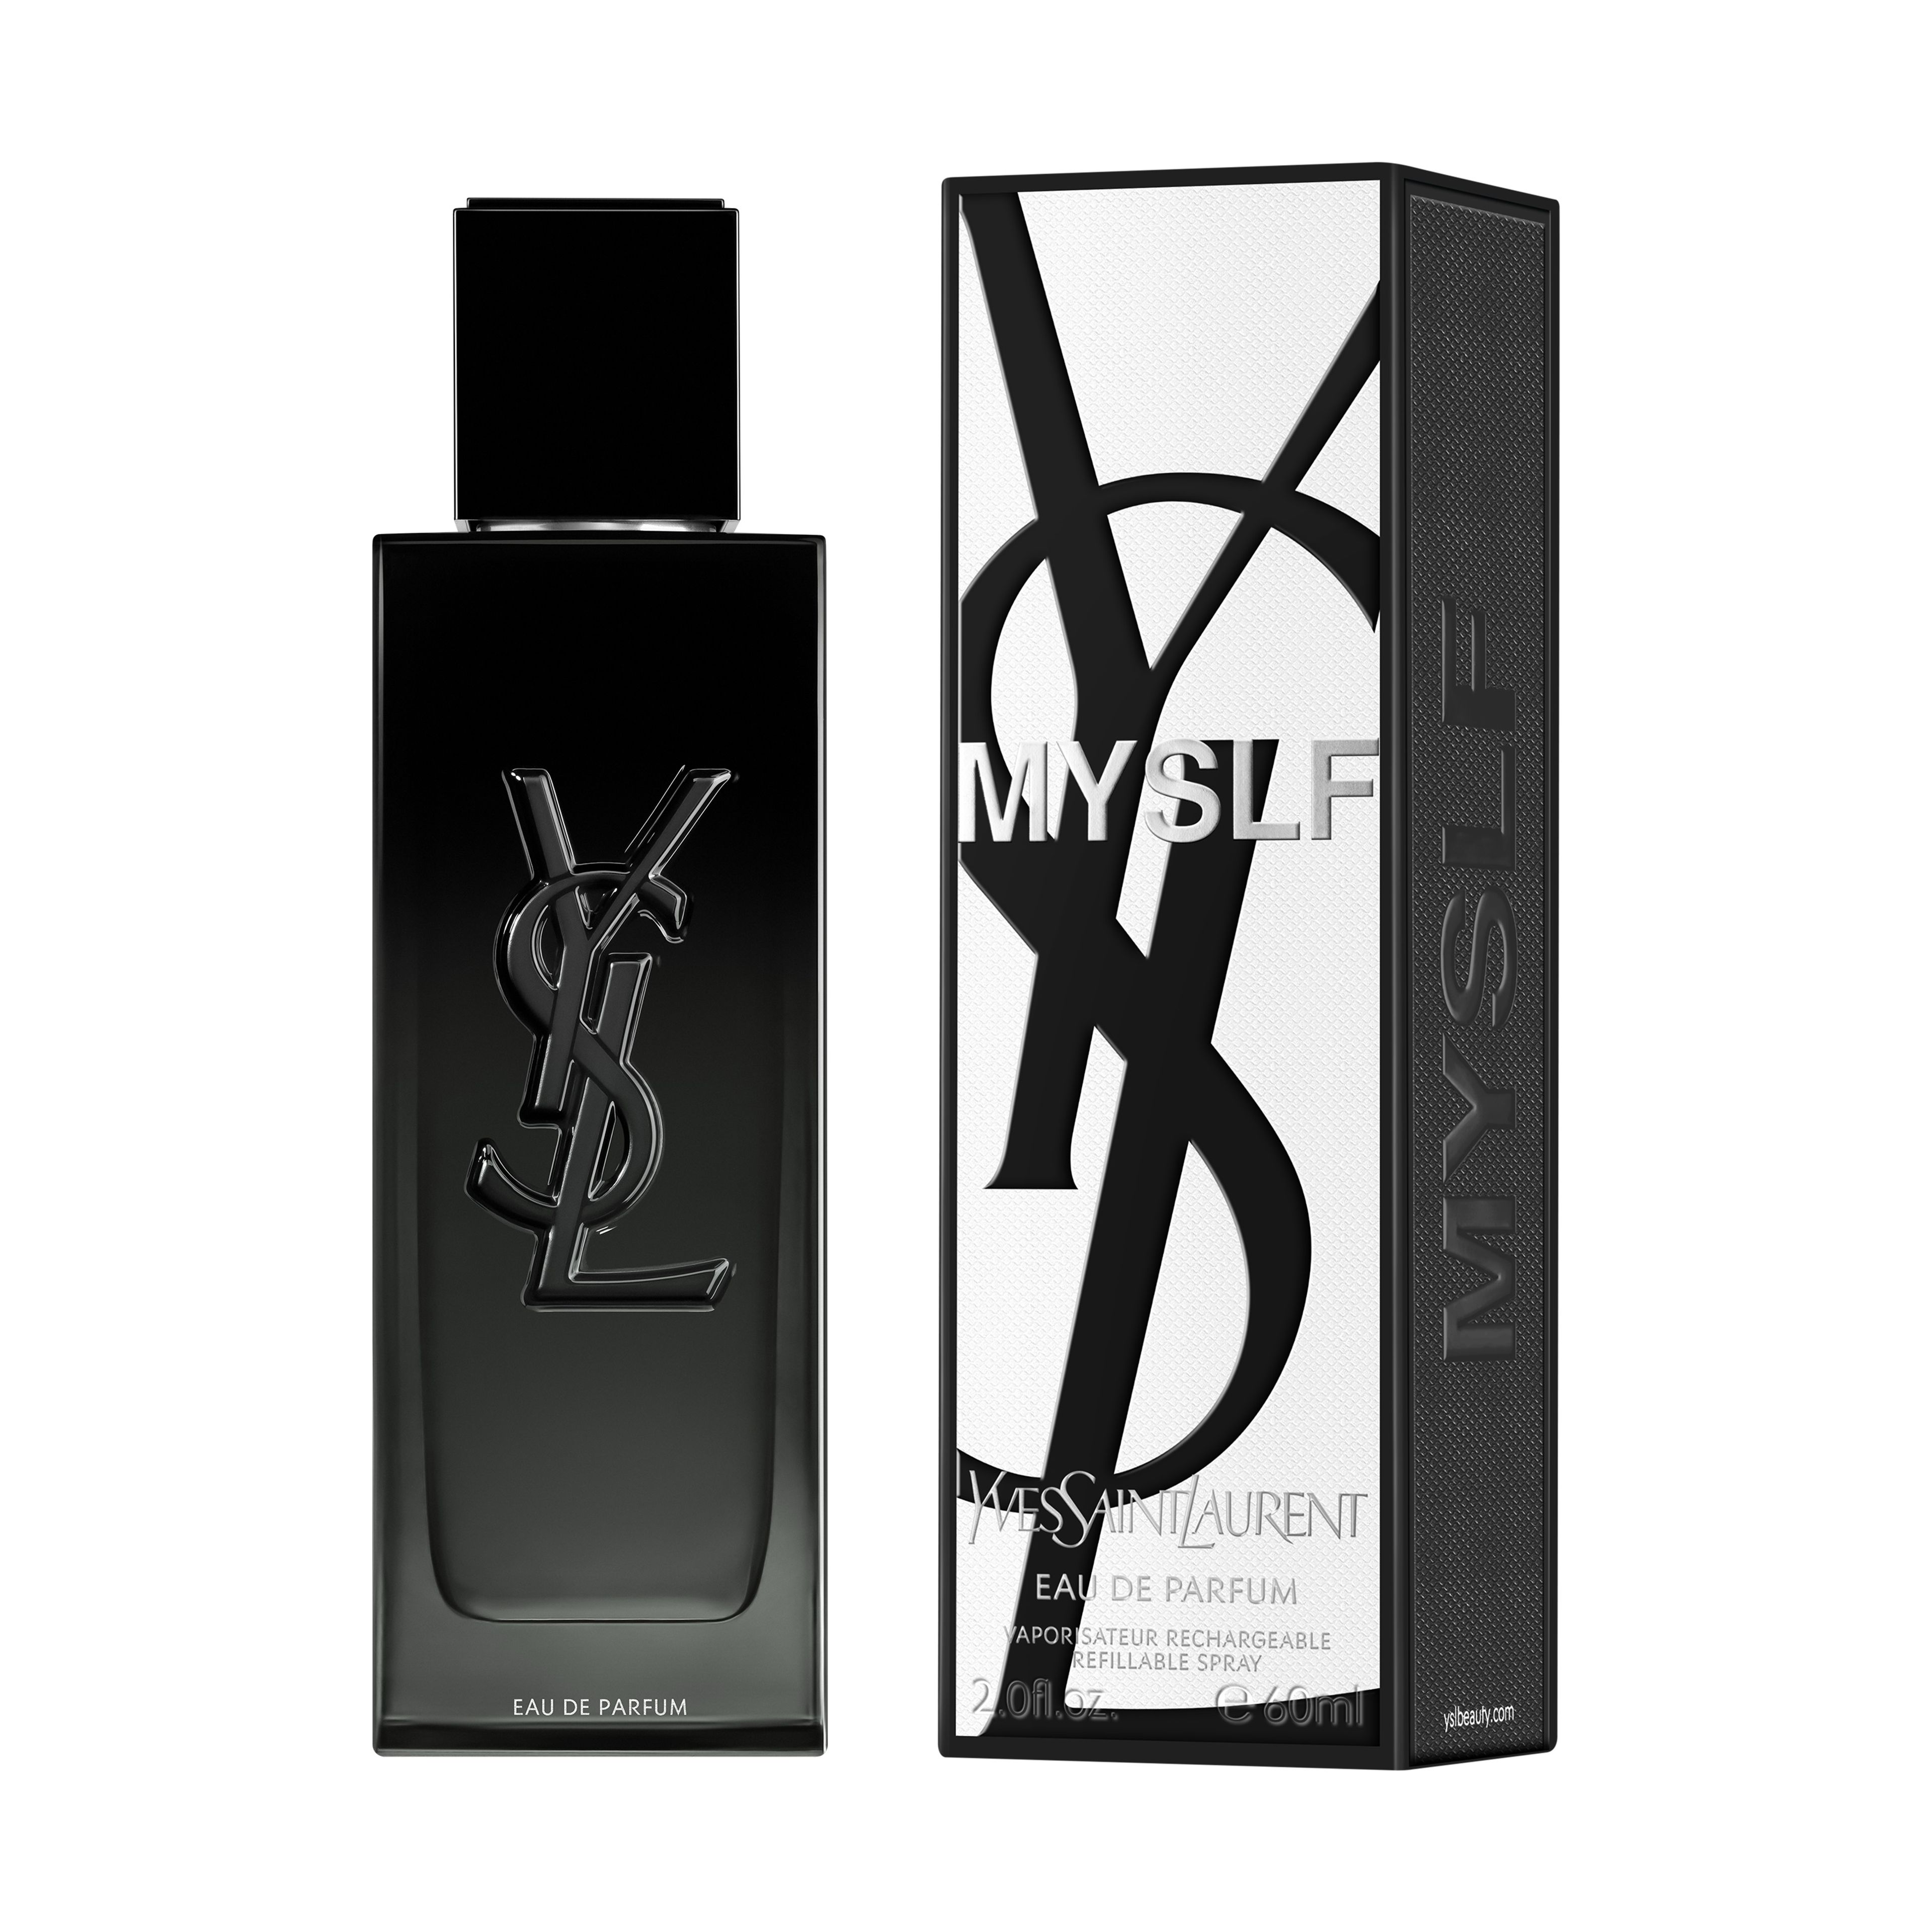 Yves Saint Laurent Myslf Eau De Parfum 2